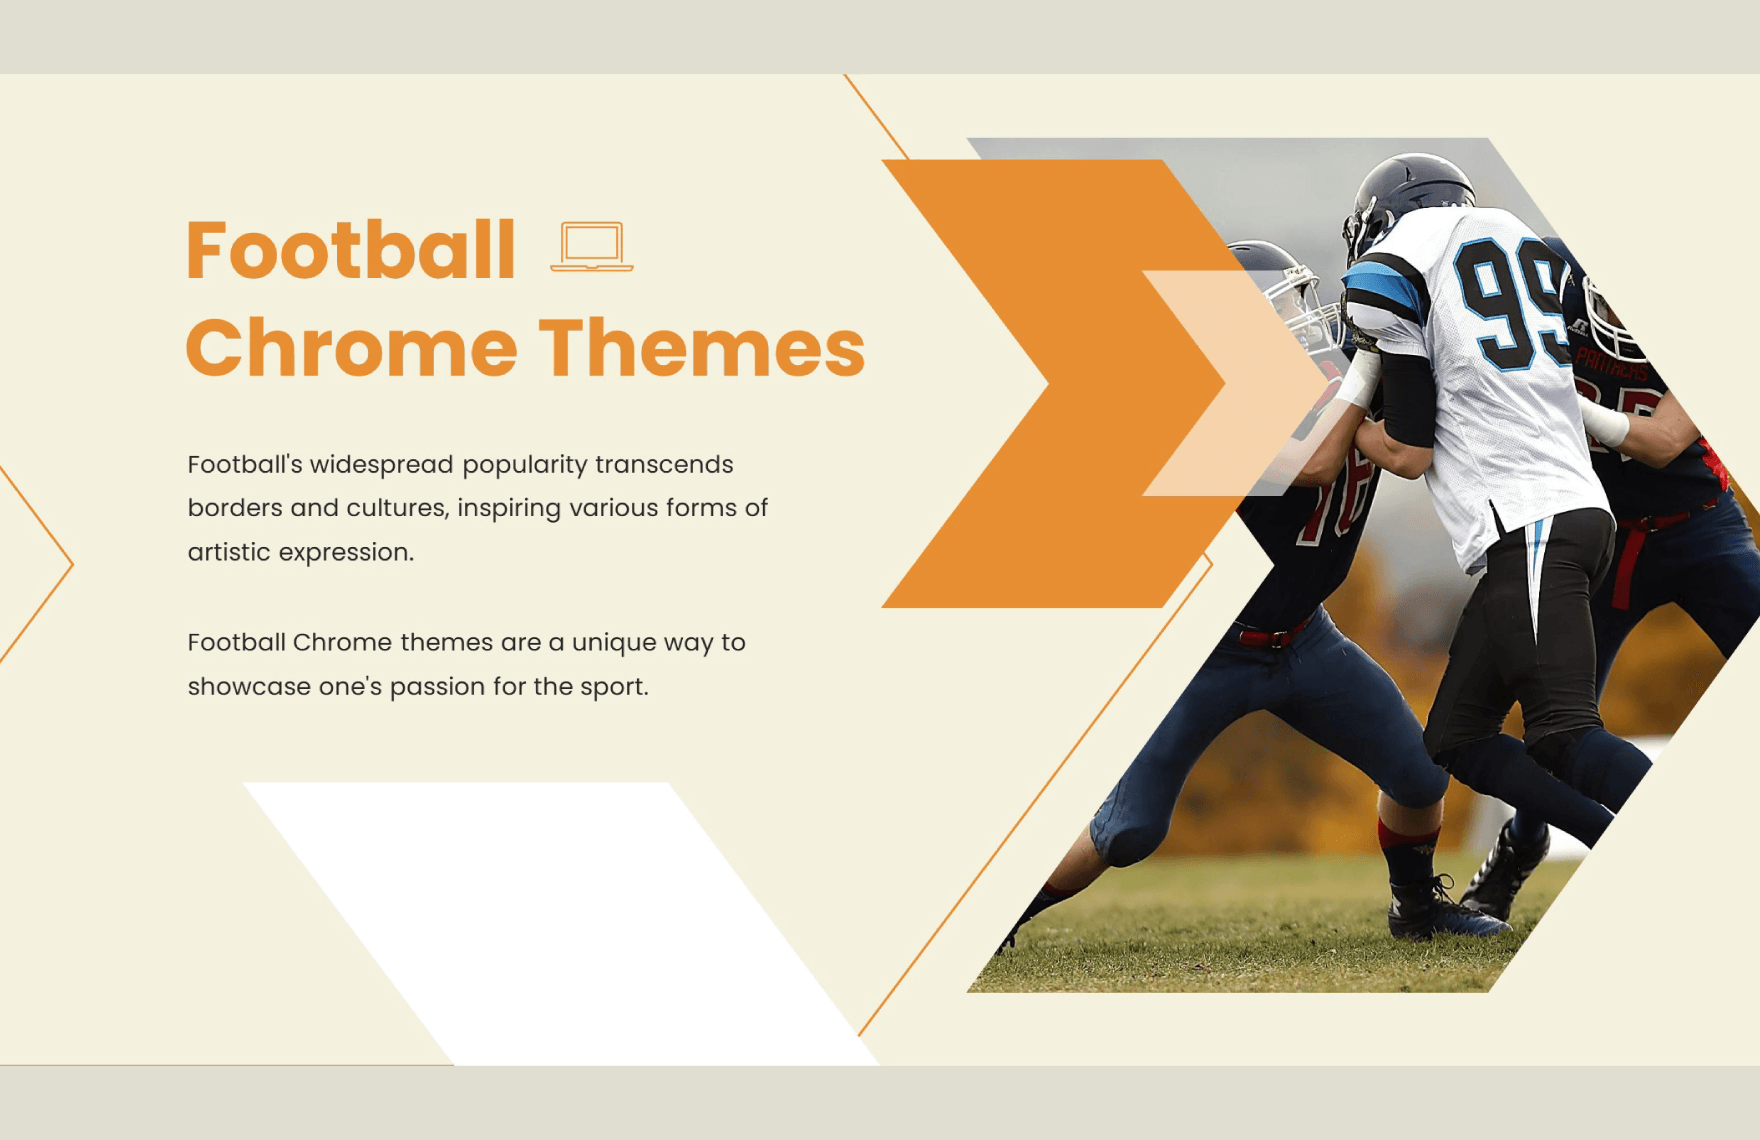 Football Chrome Themes Template